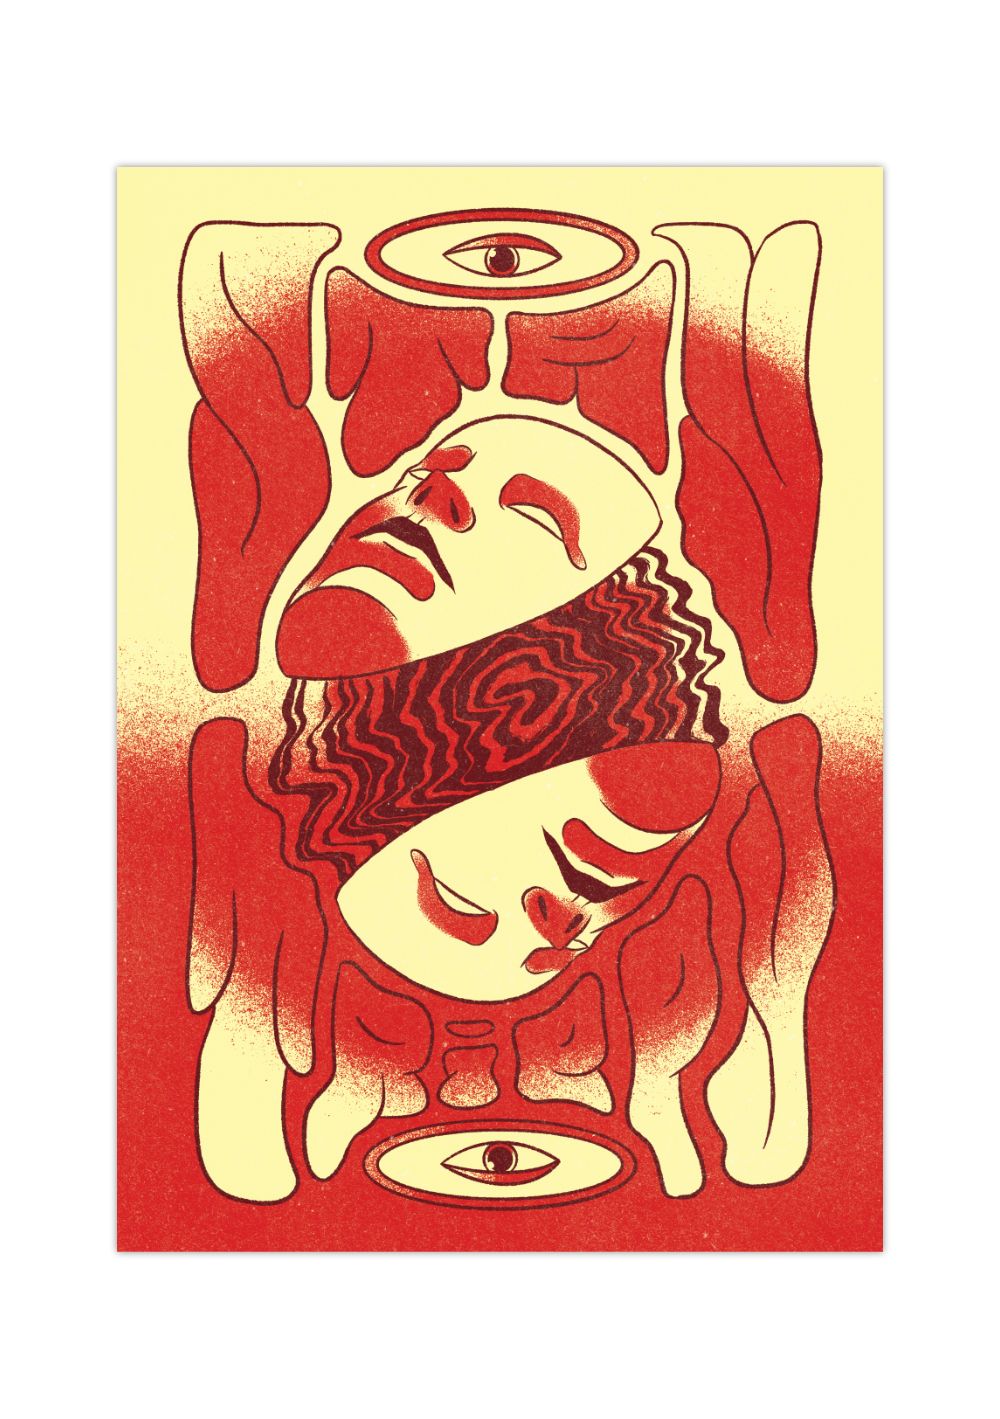 Das psychedelische Poster zeigt dir im Stil der 70er-Jahre zwei Masken und ein sehendes Auge in schönem Rot und Gelb. 